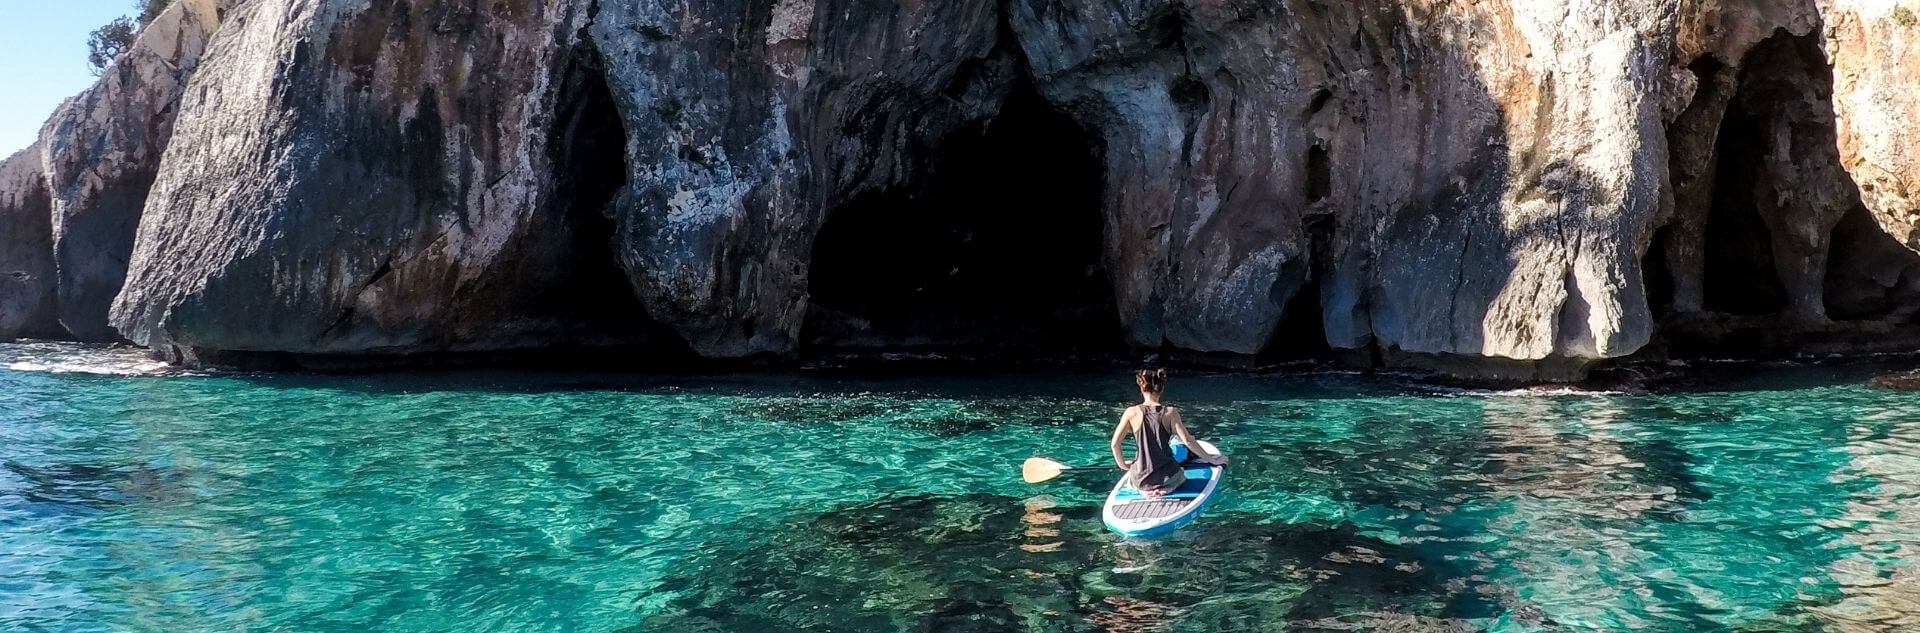 Frau sitzt auf SUP im Meer Sardinien